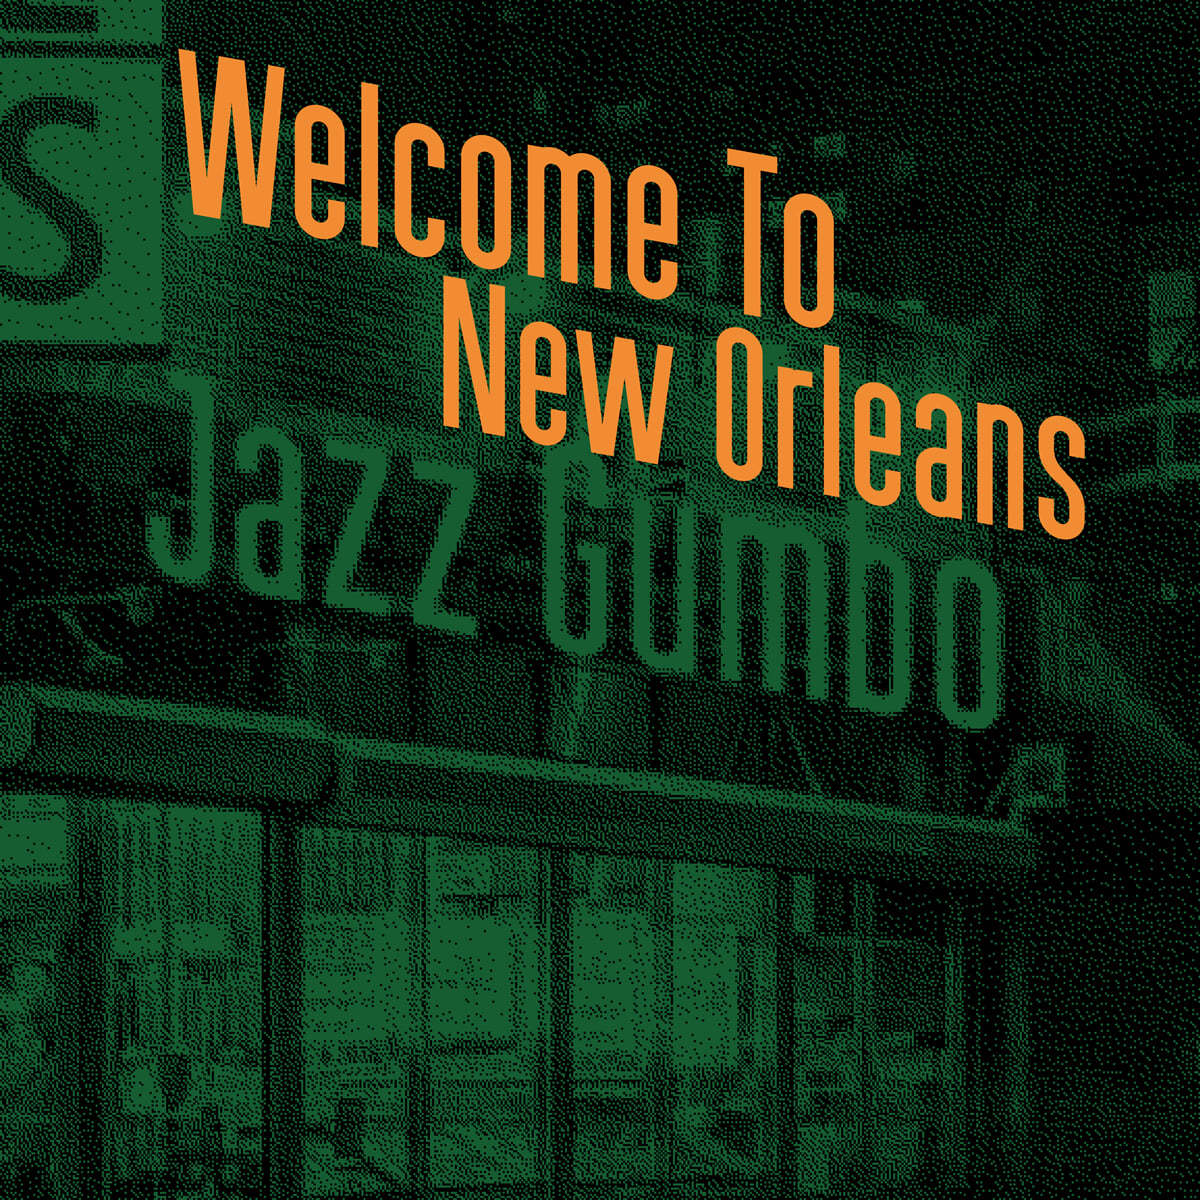 유택언 쿼텟 - Welcome To New Orleans